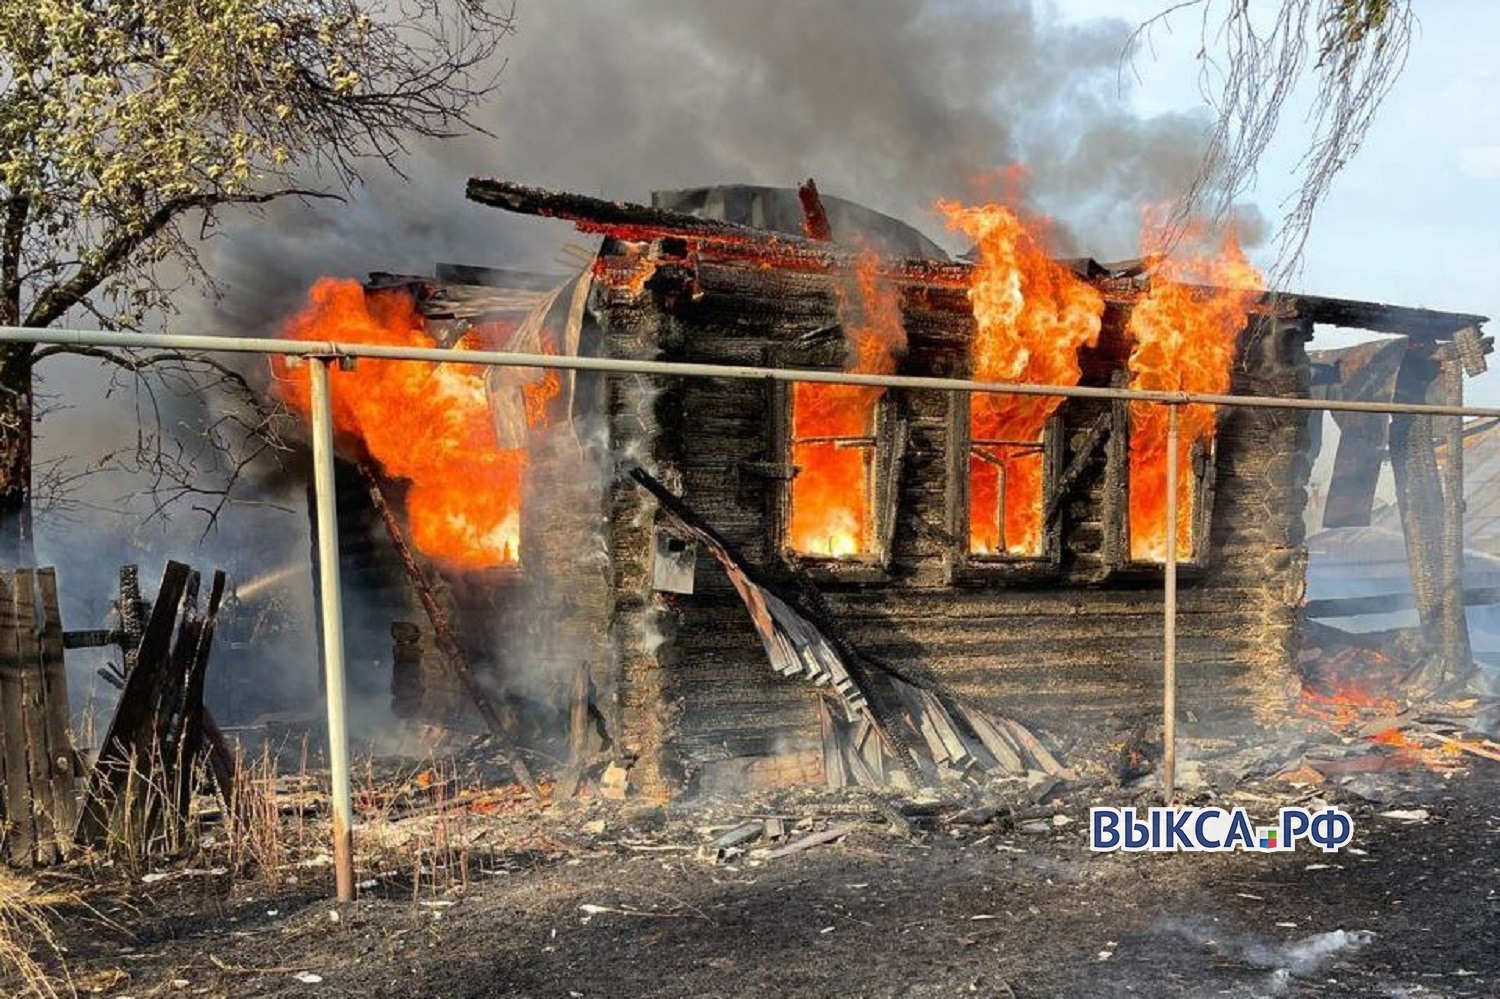 Дом, дача и надворные постройки сгорели из-за неосторожного обращения с огнём